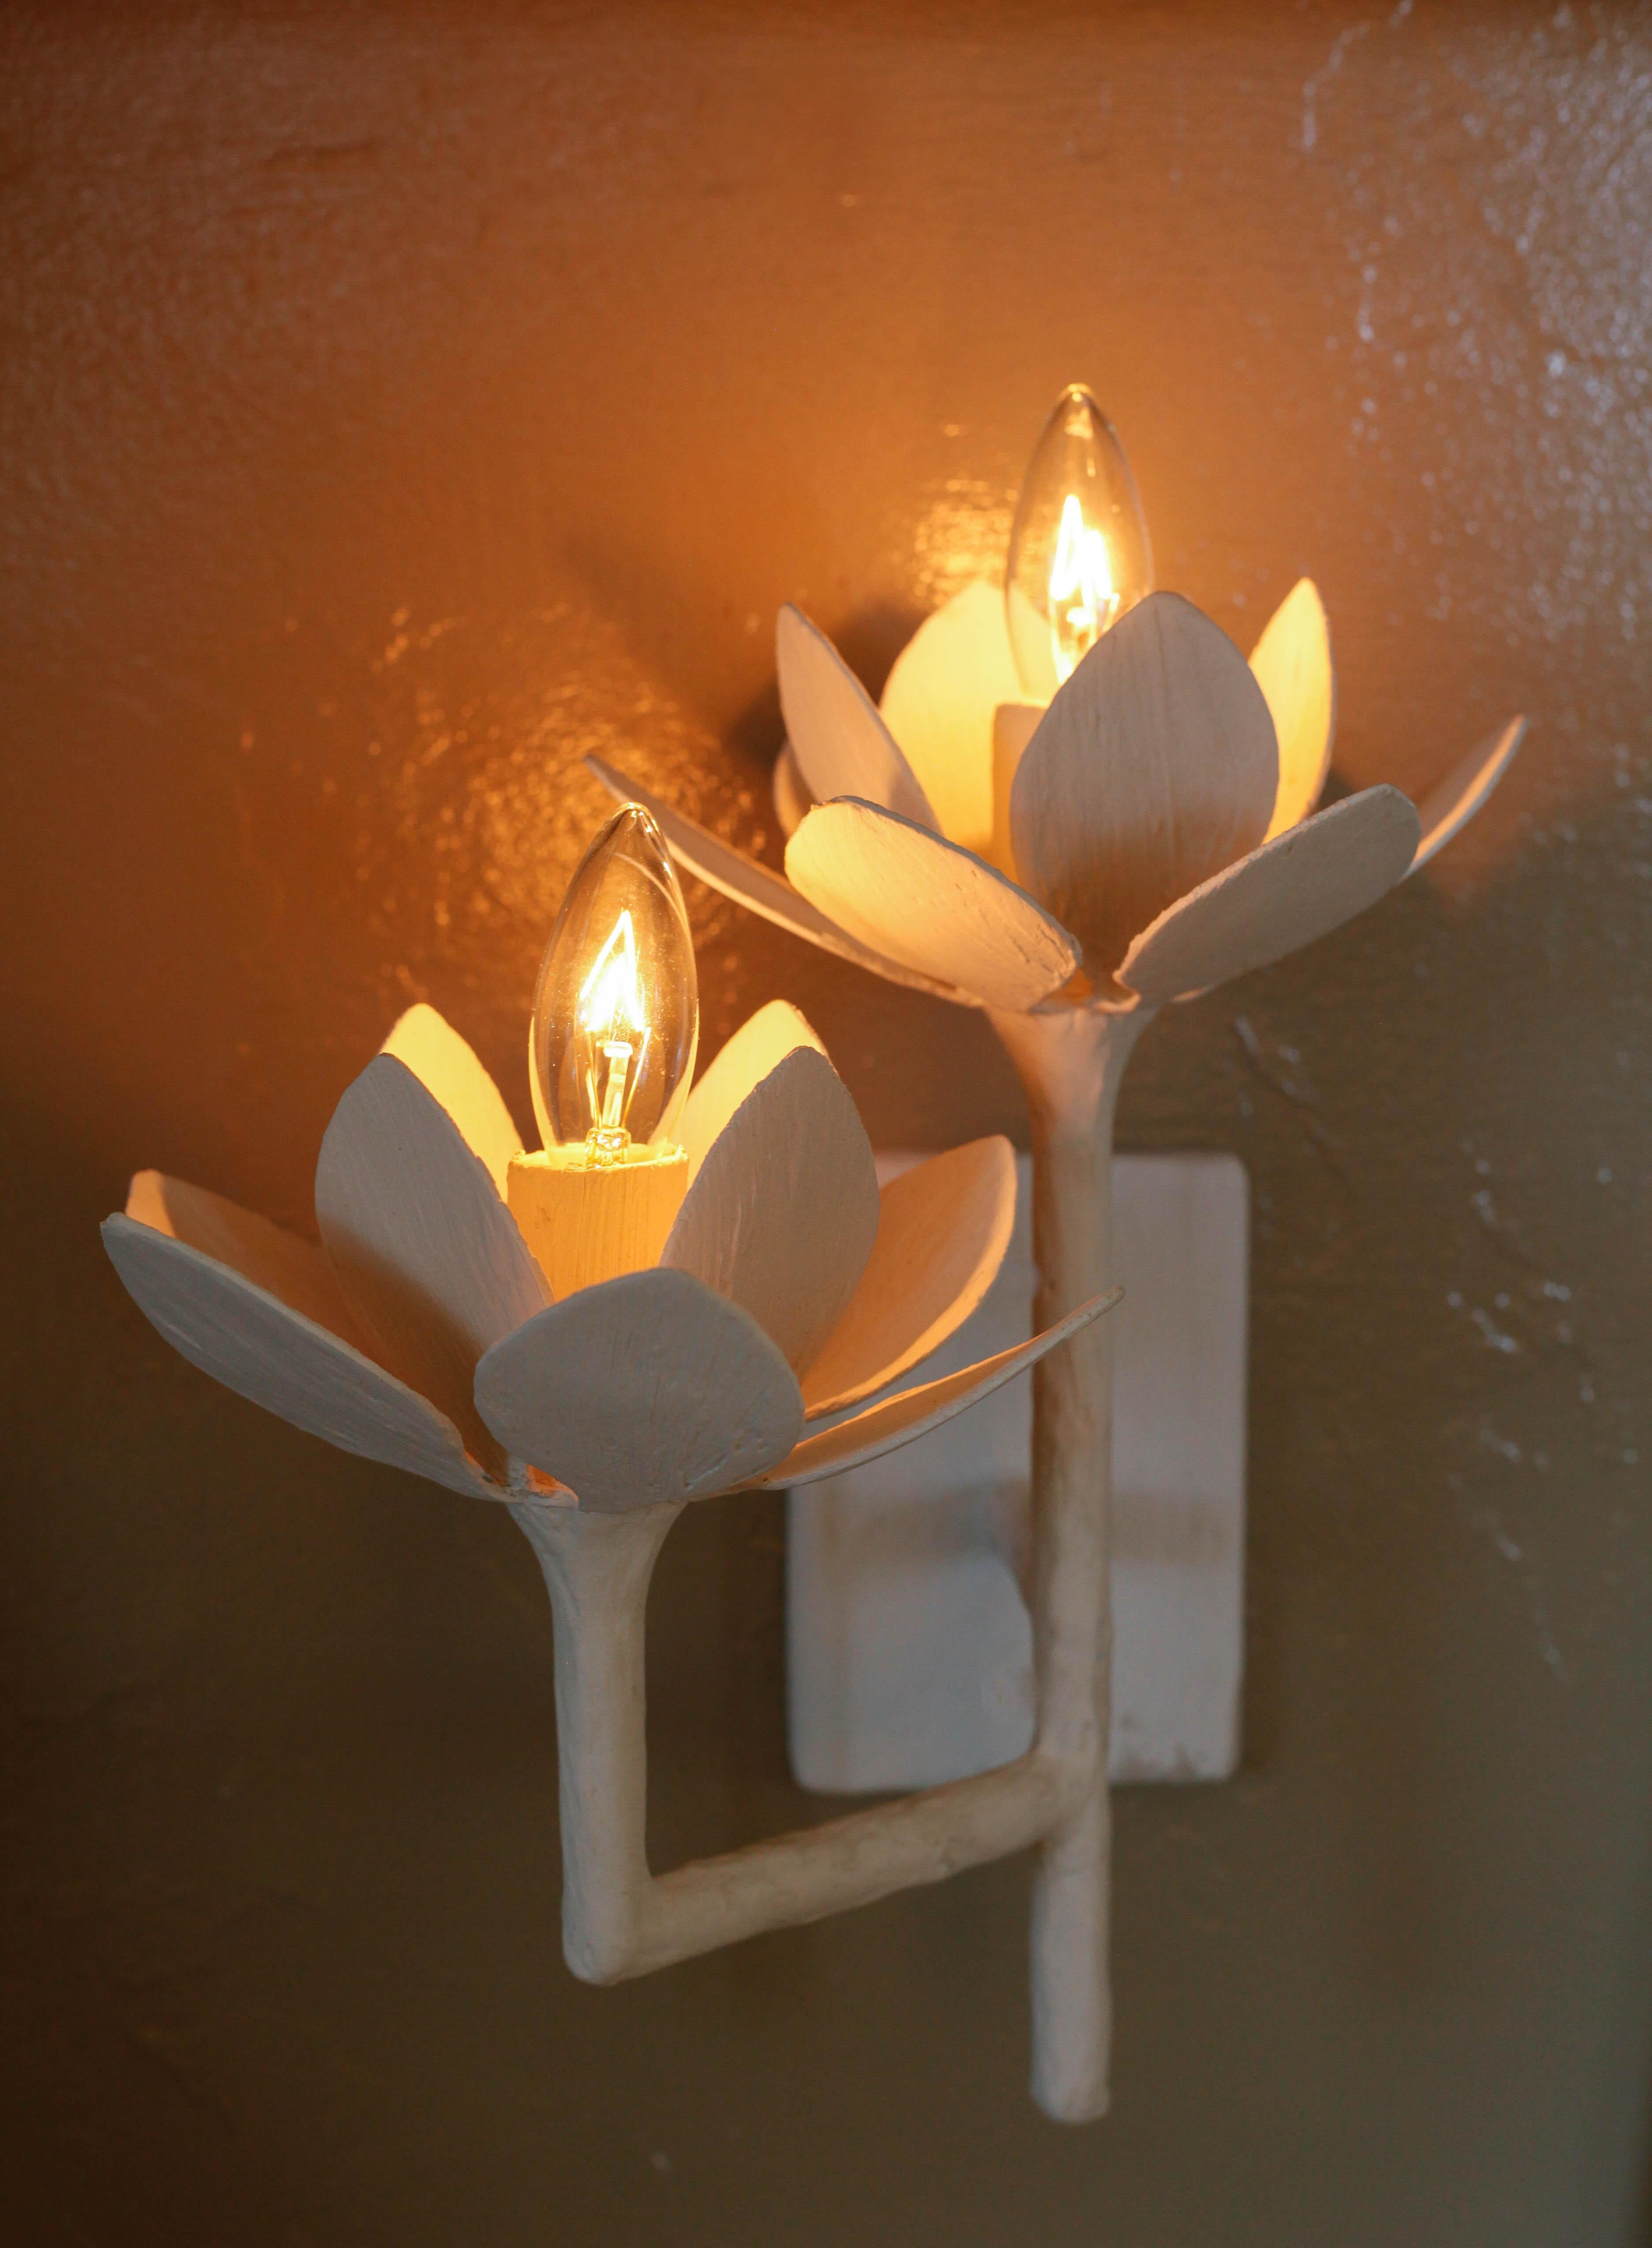 Double applique en forme de fleur de lotus par Tracey Garet de Apsara Interior Design. Chaque fleur de 6,5 pouces de diamètre contient une lumière individuelle. La fabrication est en plâtre sur des tubes d'acier. Le dessin présenté est en plâtre